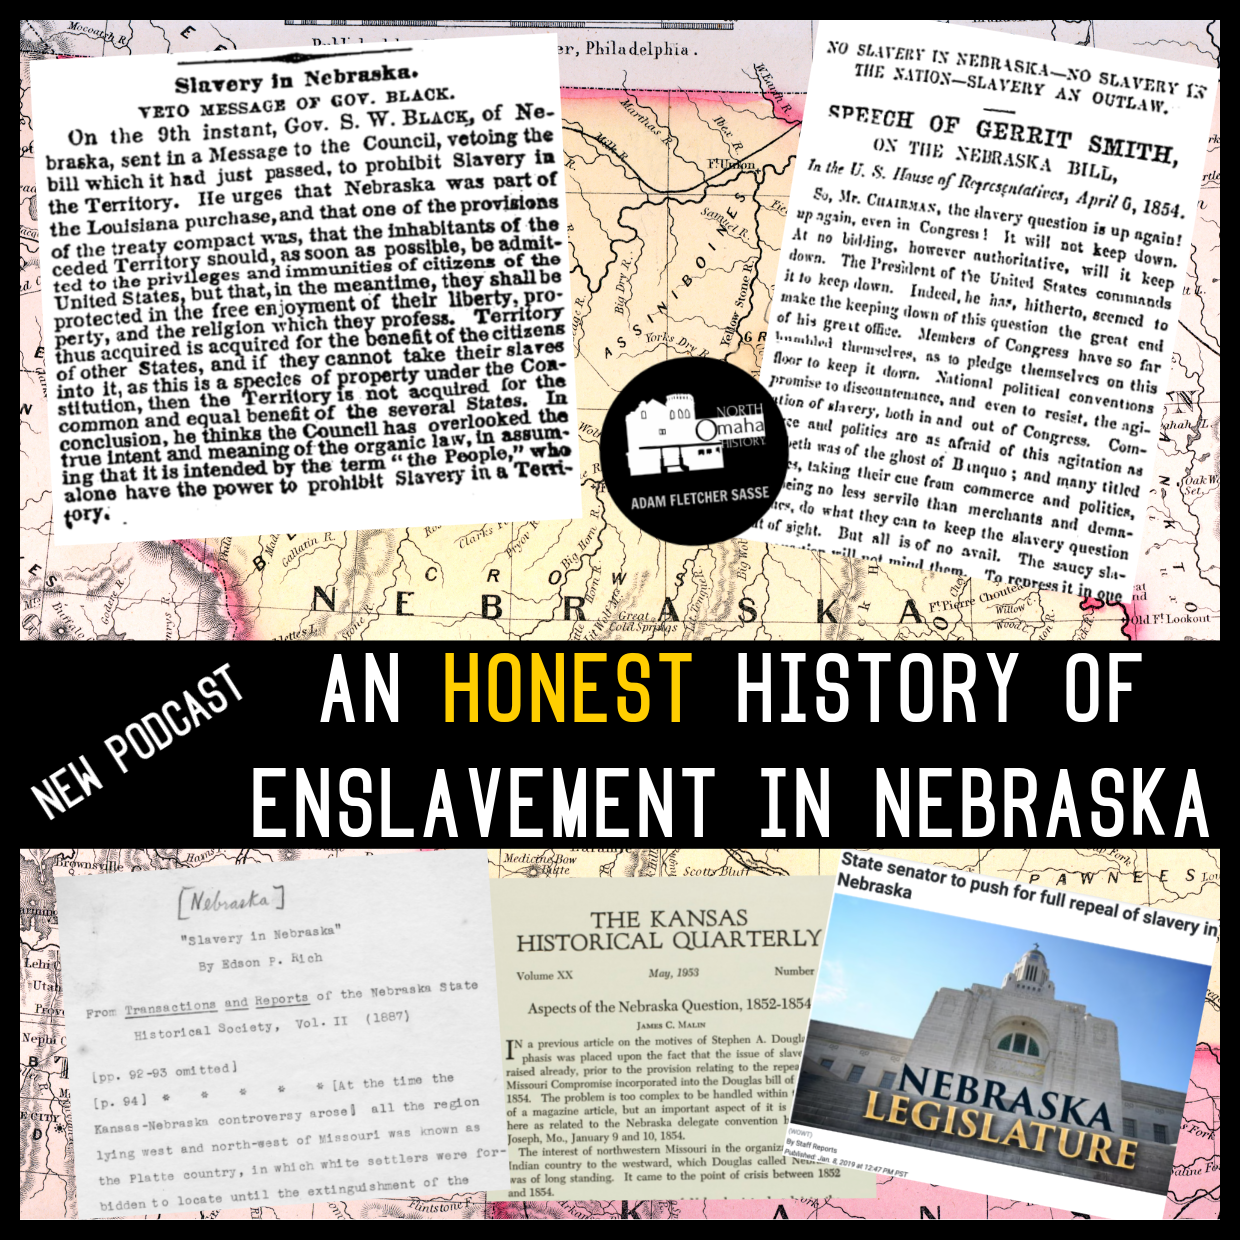 An Honest History of Enslavement in Nebraska